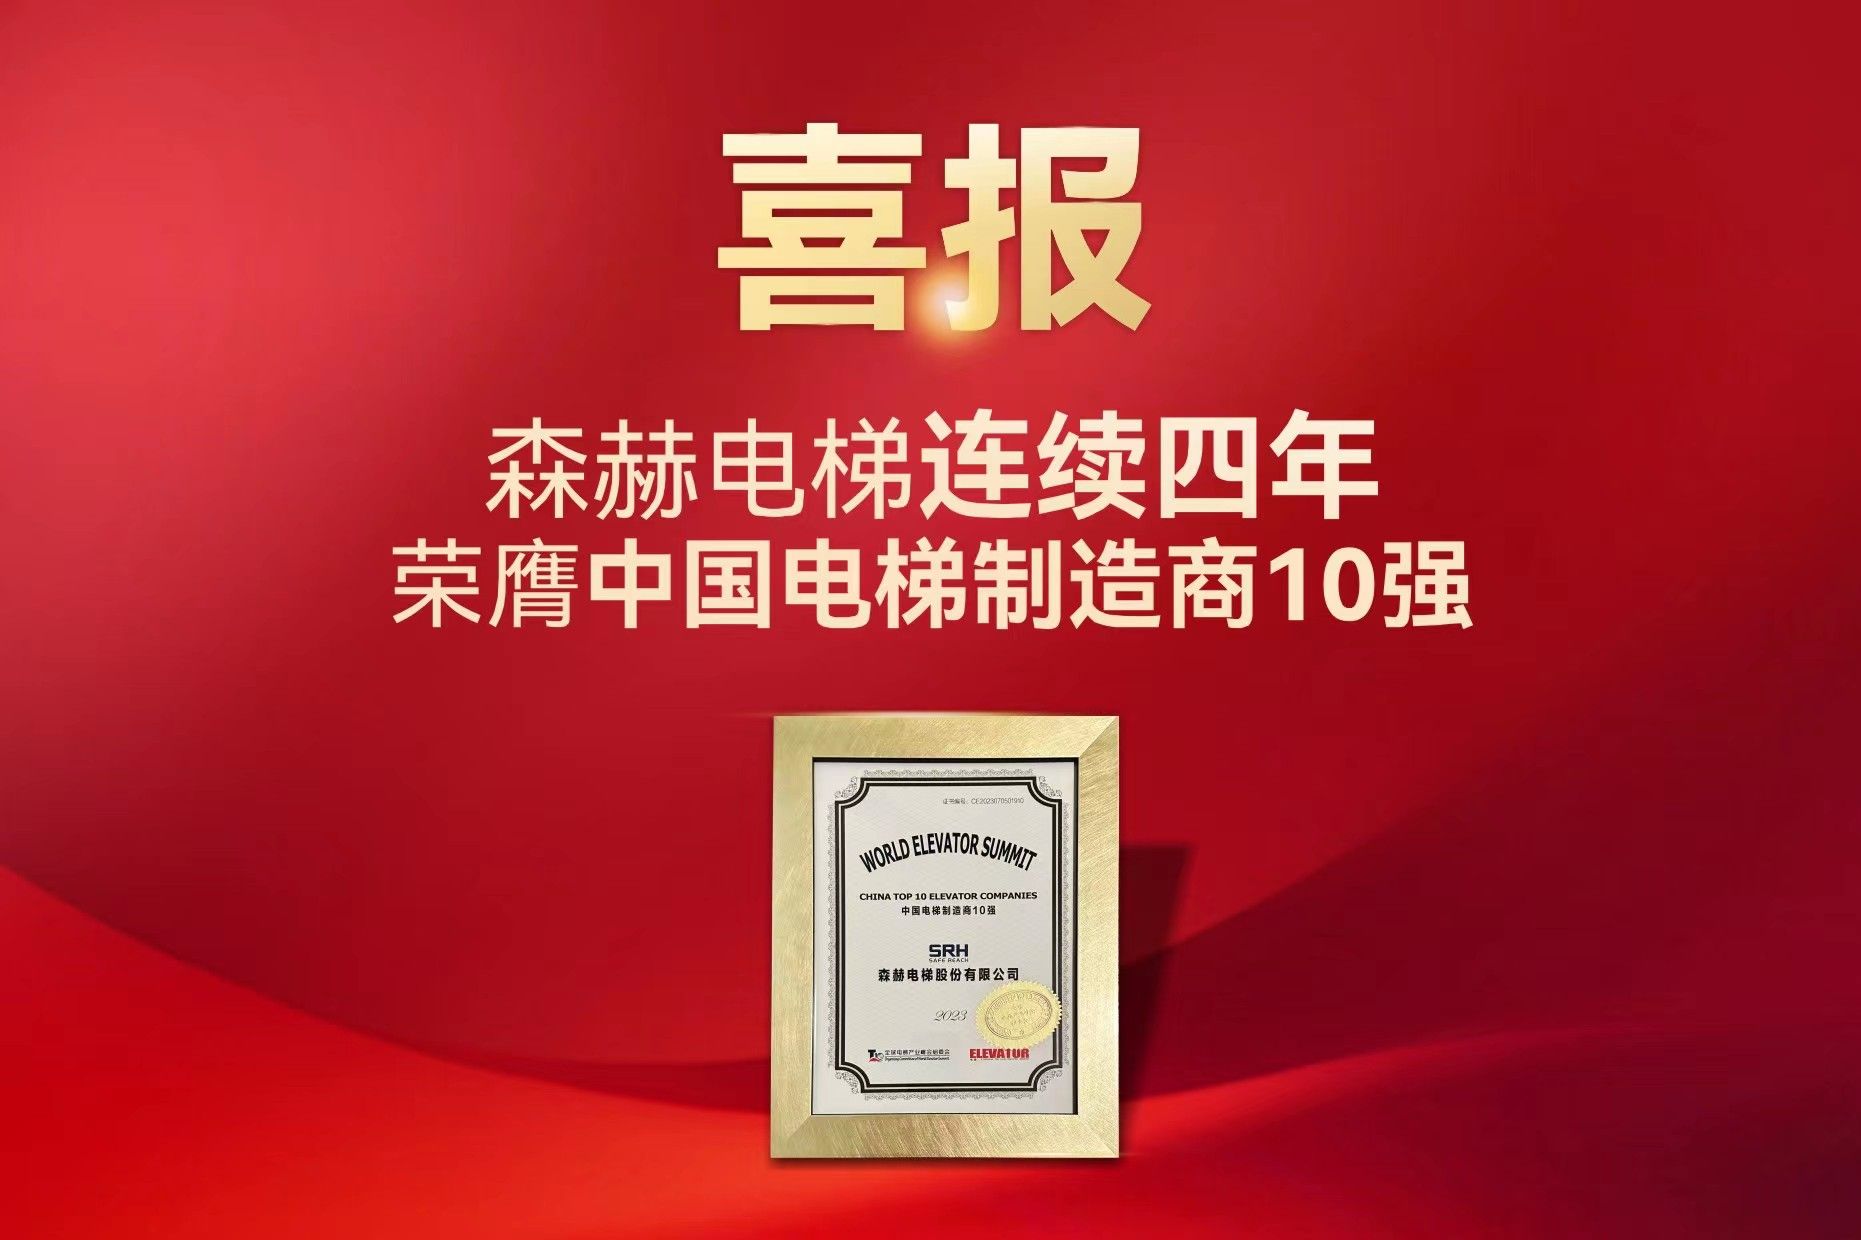 森赫电梯连续四年荣膺中国电梯制造商10强殊荣